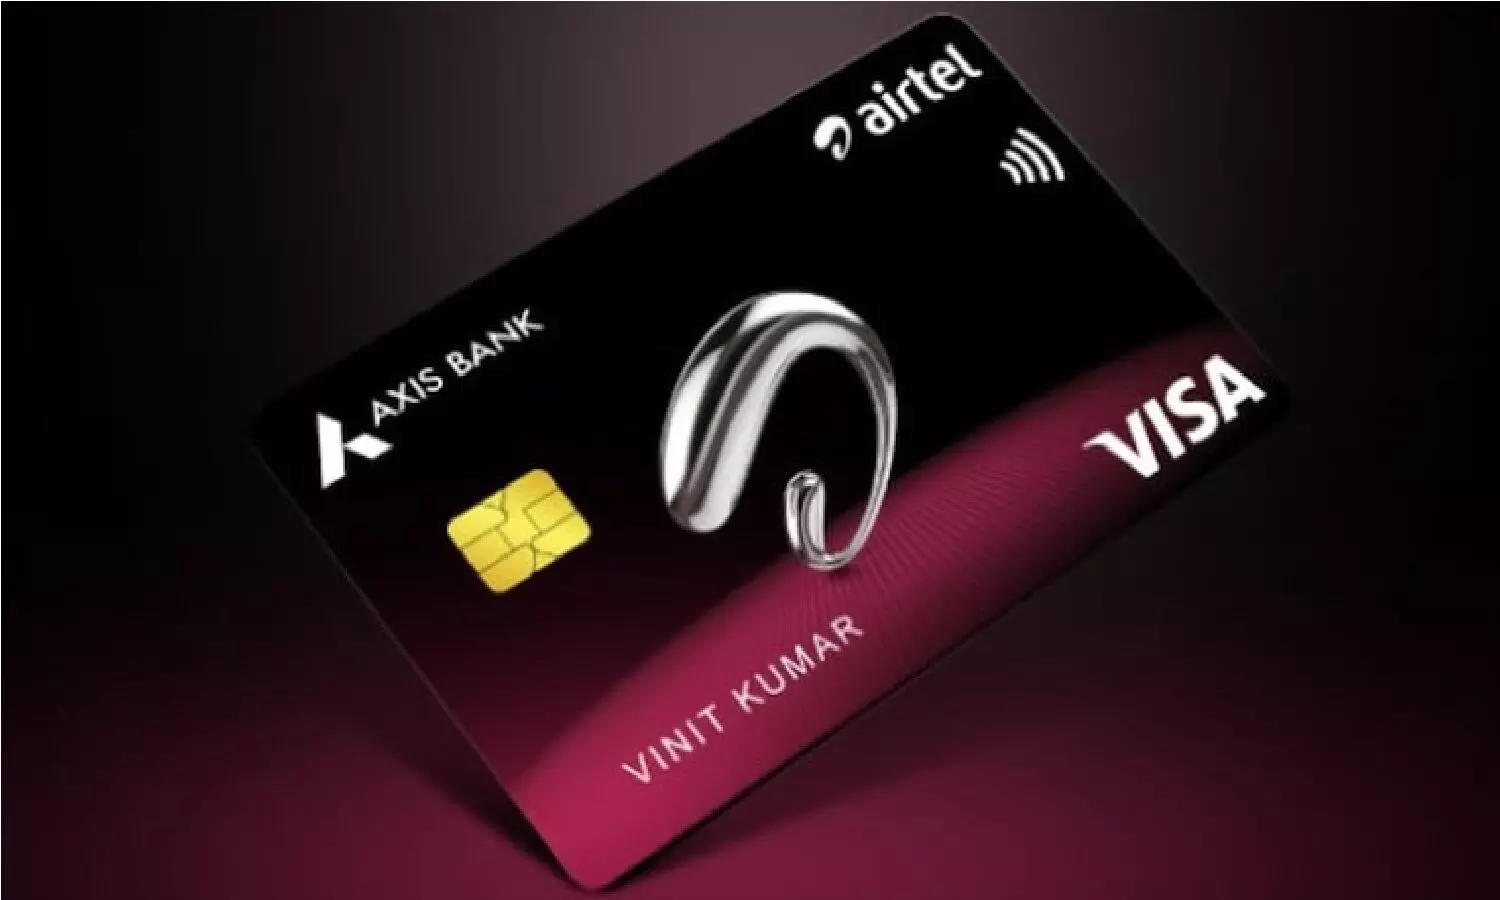 Airtel यूजर्स के लिए खुशखबरी, जारी हुआ एयरटेल का Credit Card, मिलेगा शानदार कैशबैक सहित ये फायदे